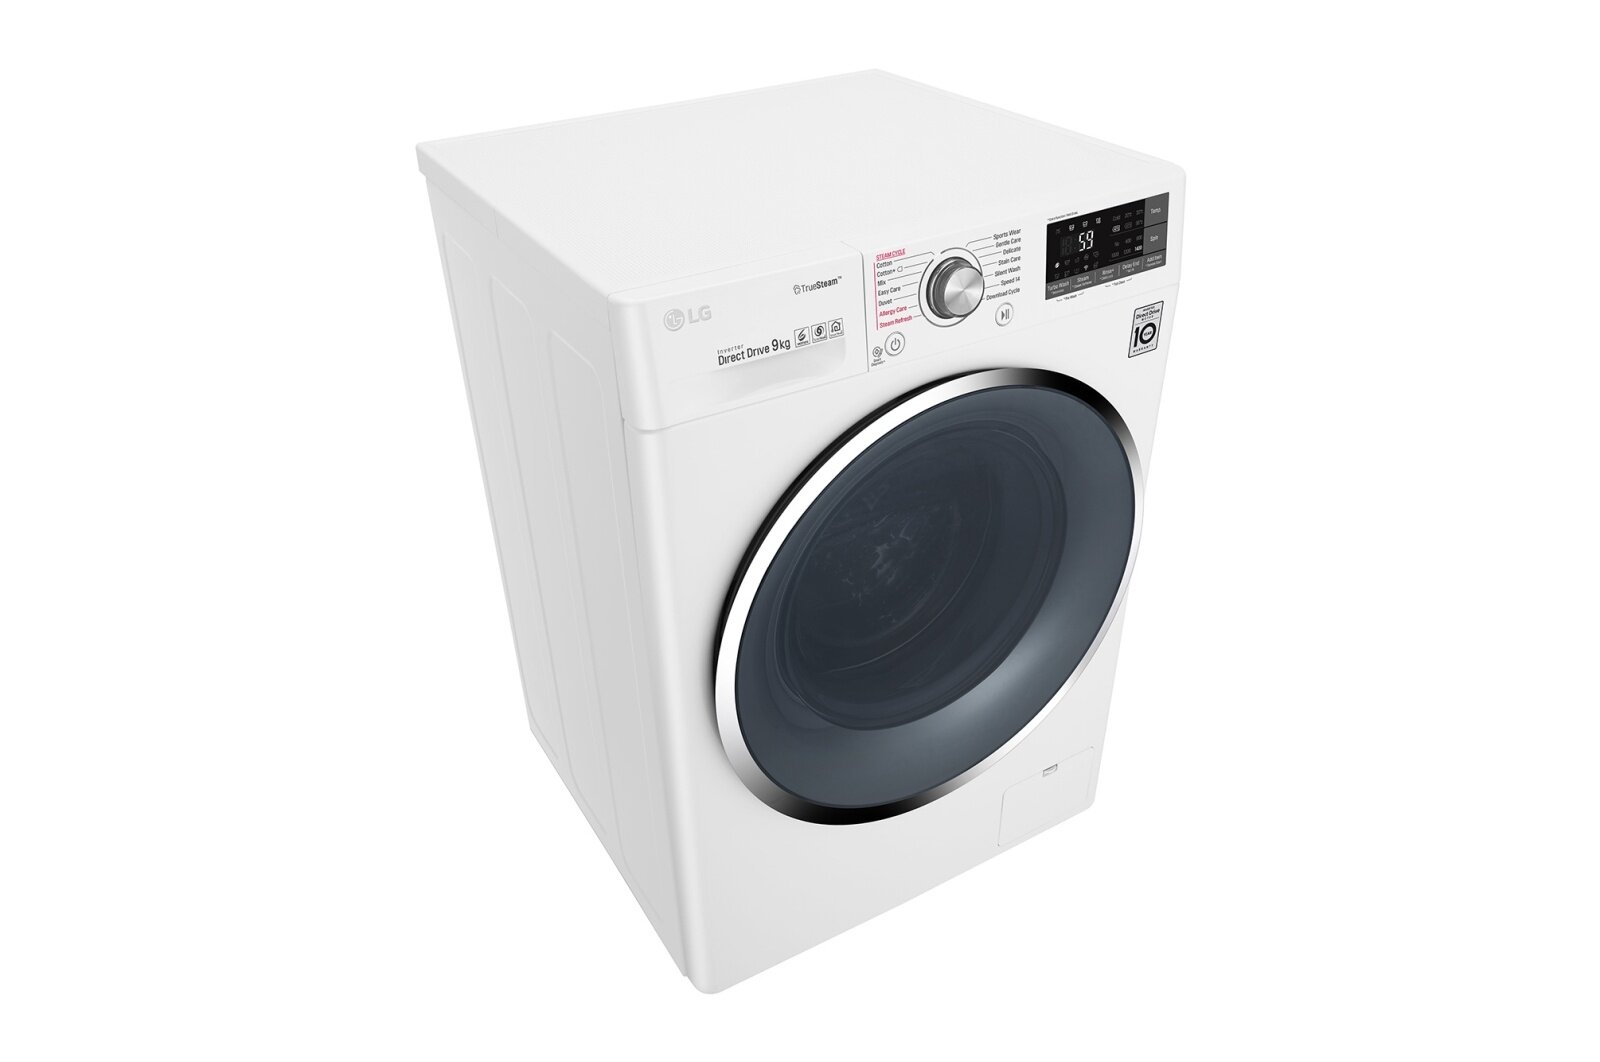 tìm hiểu về công nghệ hơi nước Spa Steam của máy giặt LG Inverter 9kg FC1409S4W